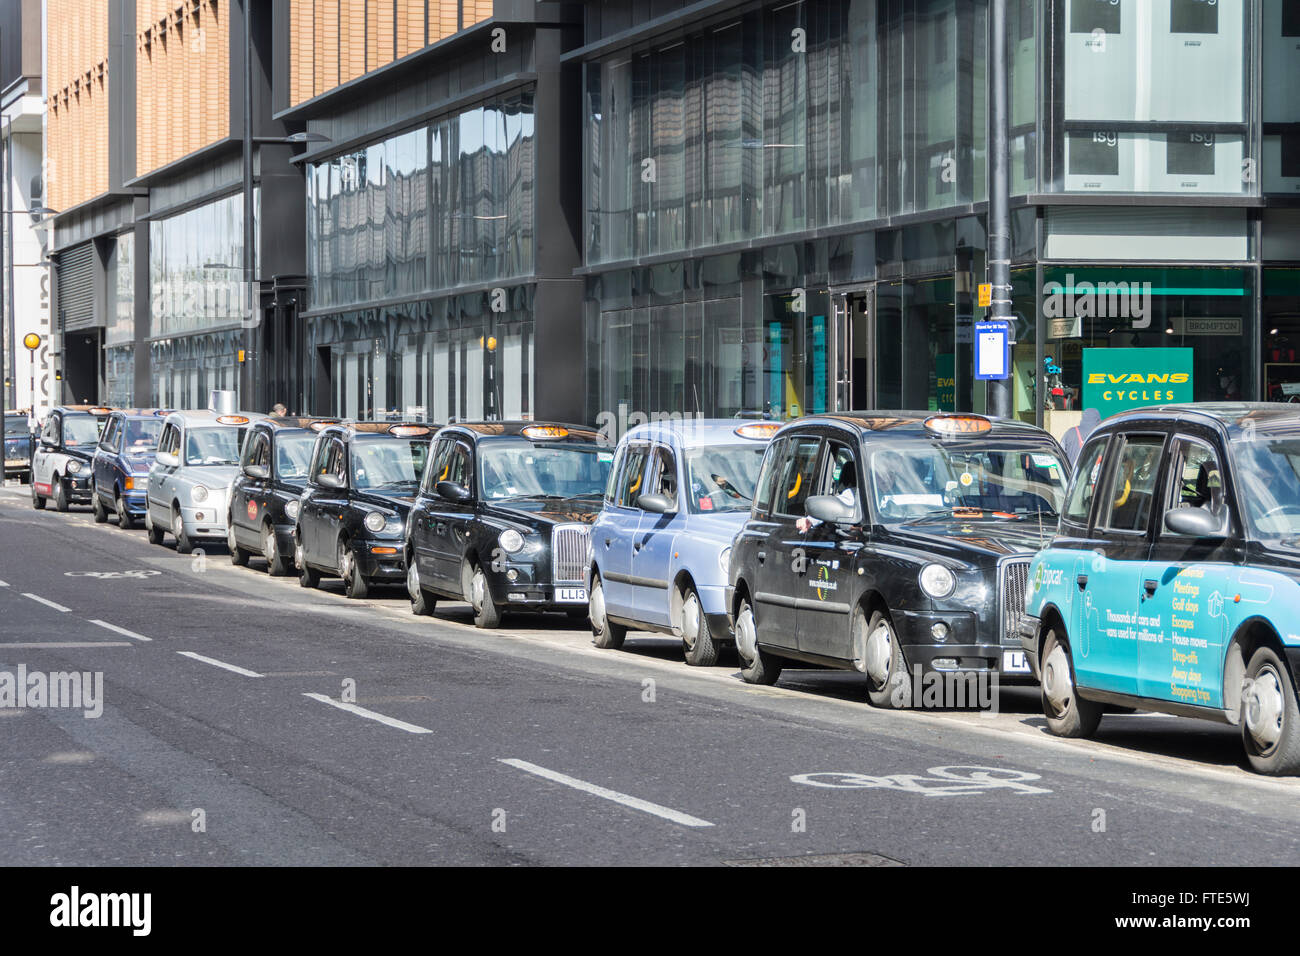 A Londra i taxi la coda davanti alla stazione di St Pancras nel centro di Londra, Regno Unito Foto Stock